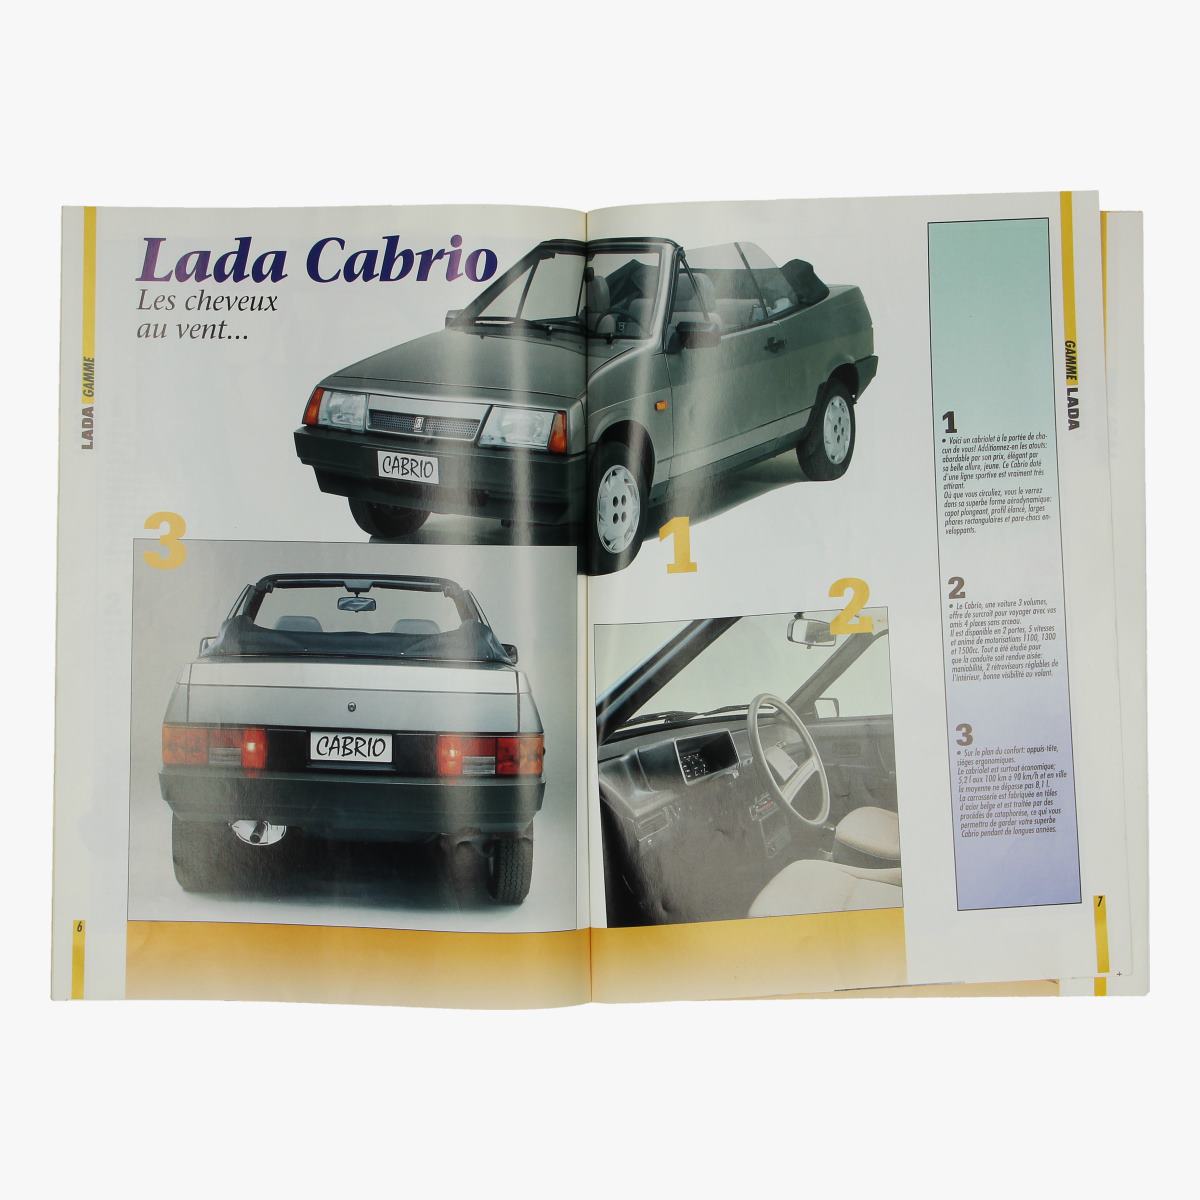 Afbeeldingen van magazine lada n°6 jan 1994